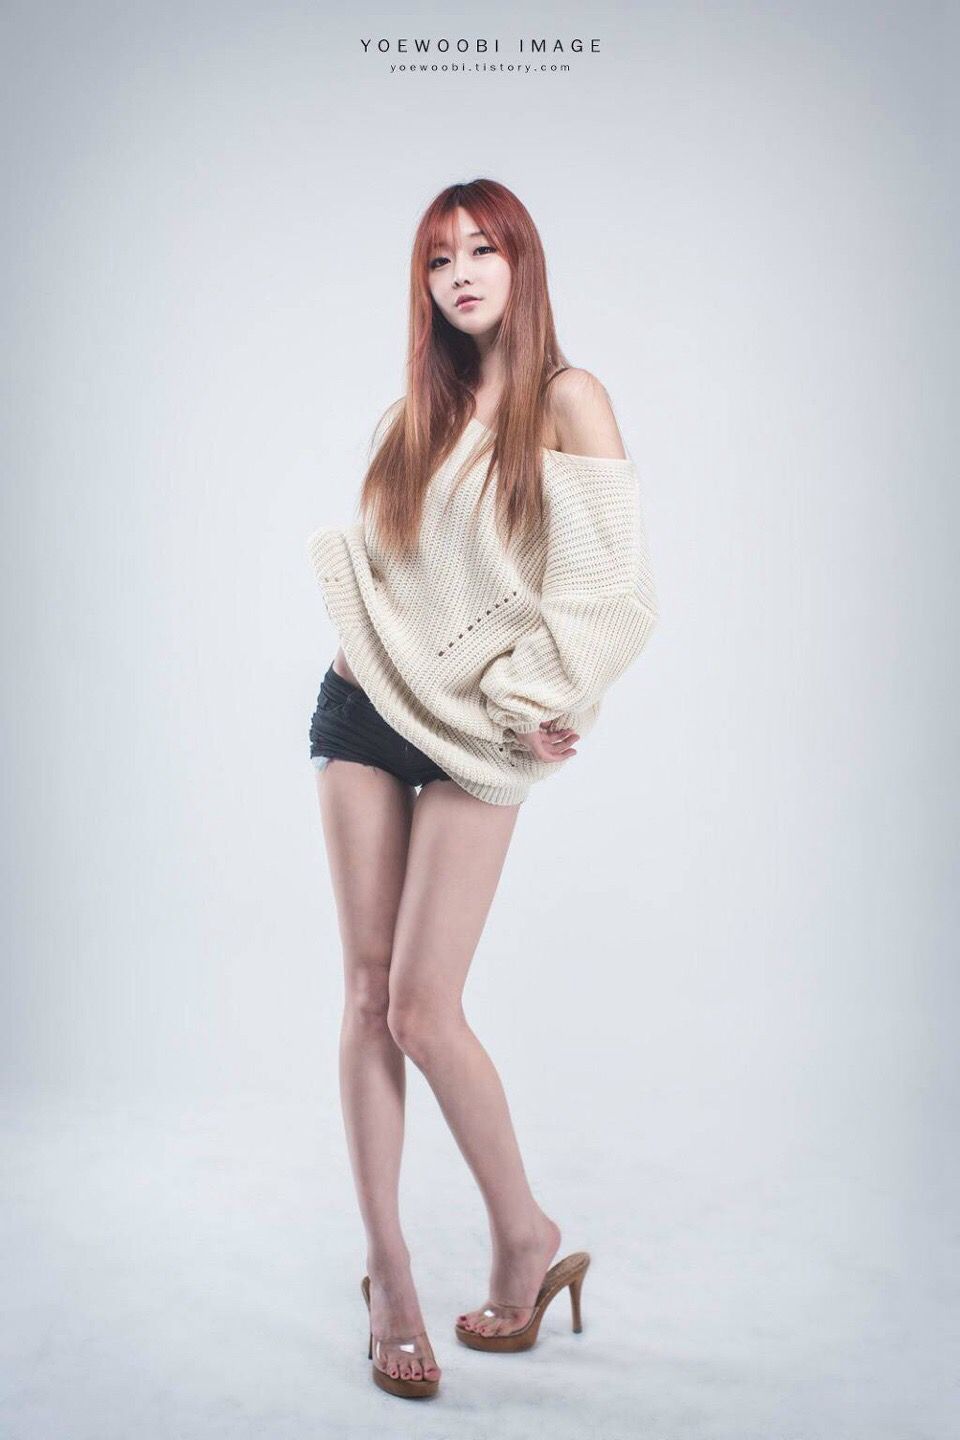 韩国长腿美女热裤搔首弄姿秀美腿